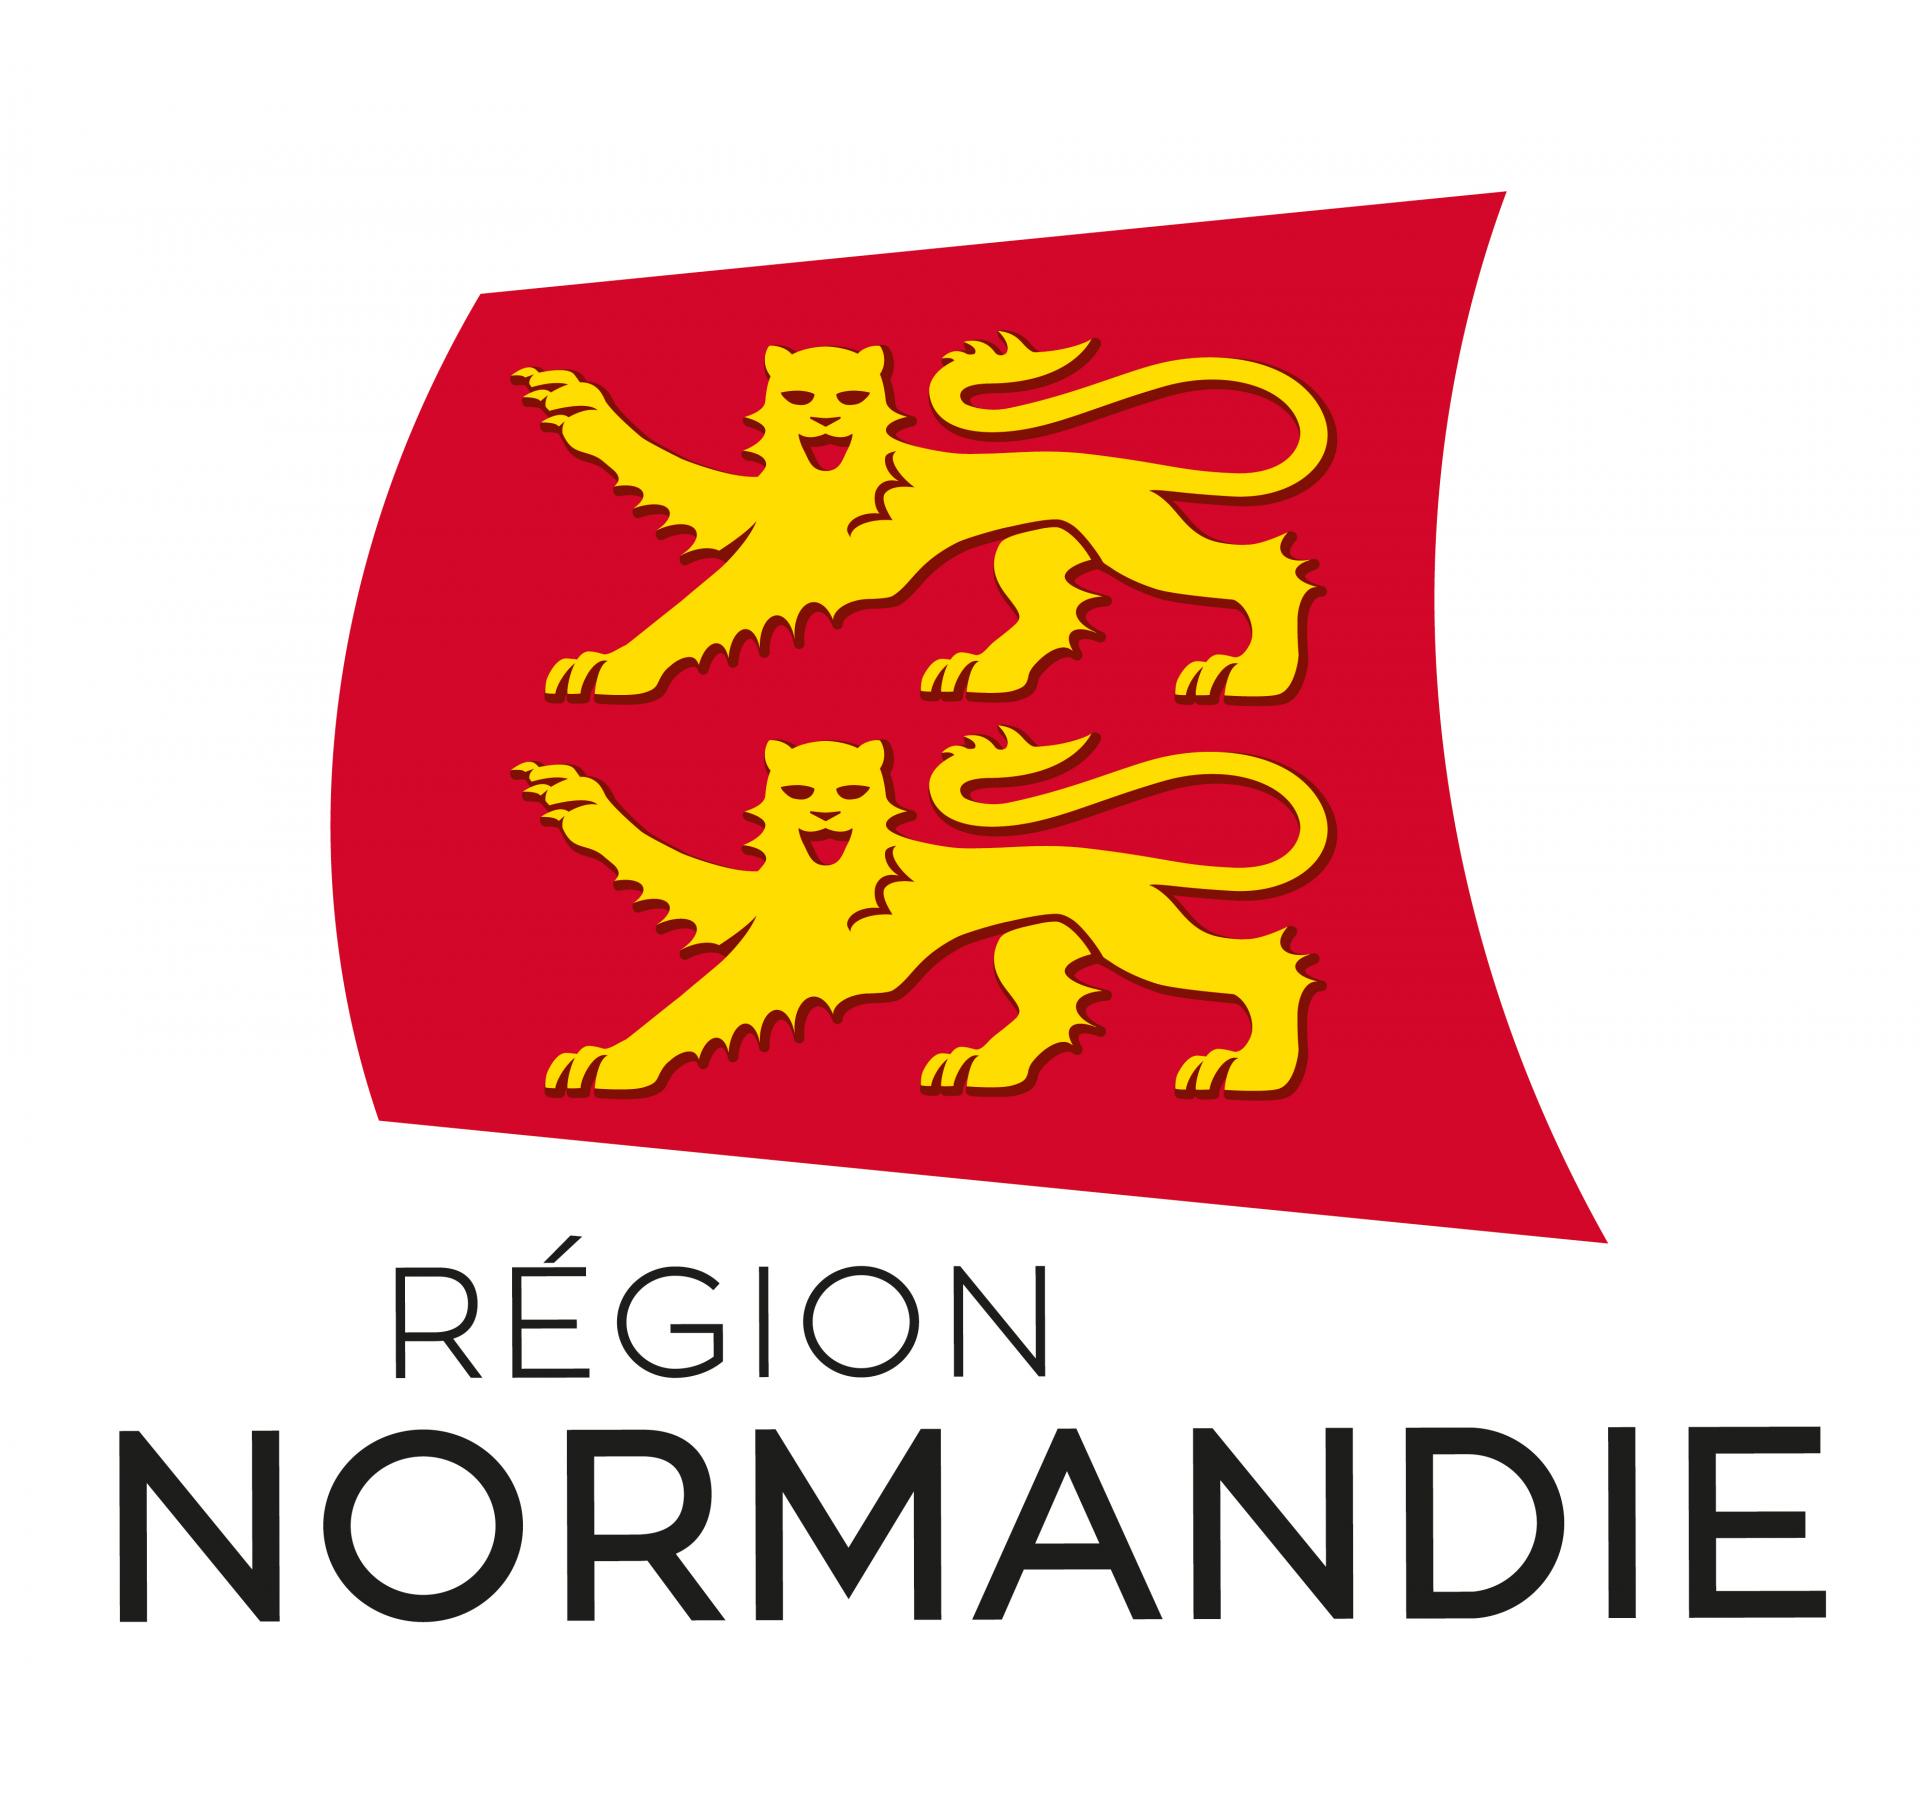 Region normandie 2